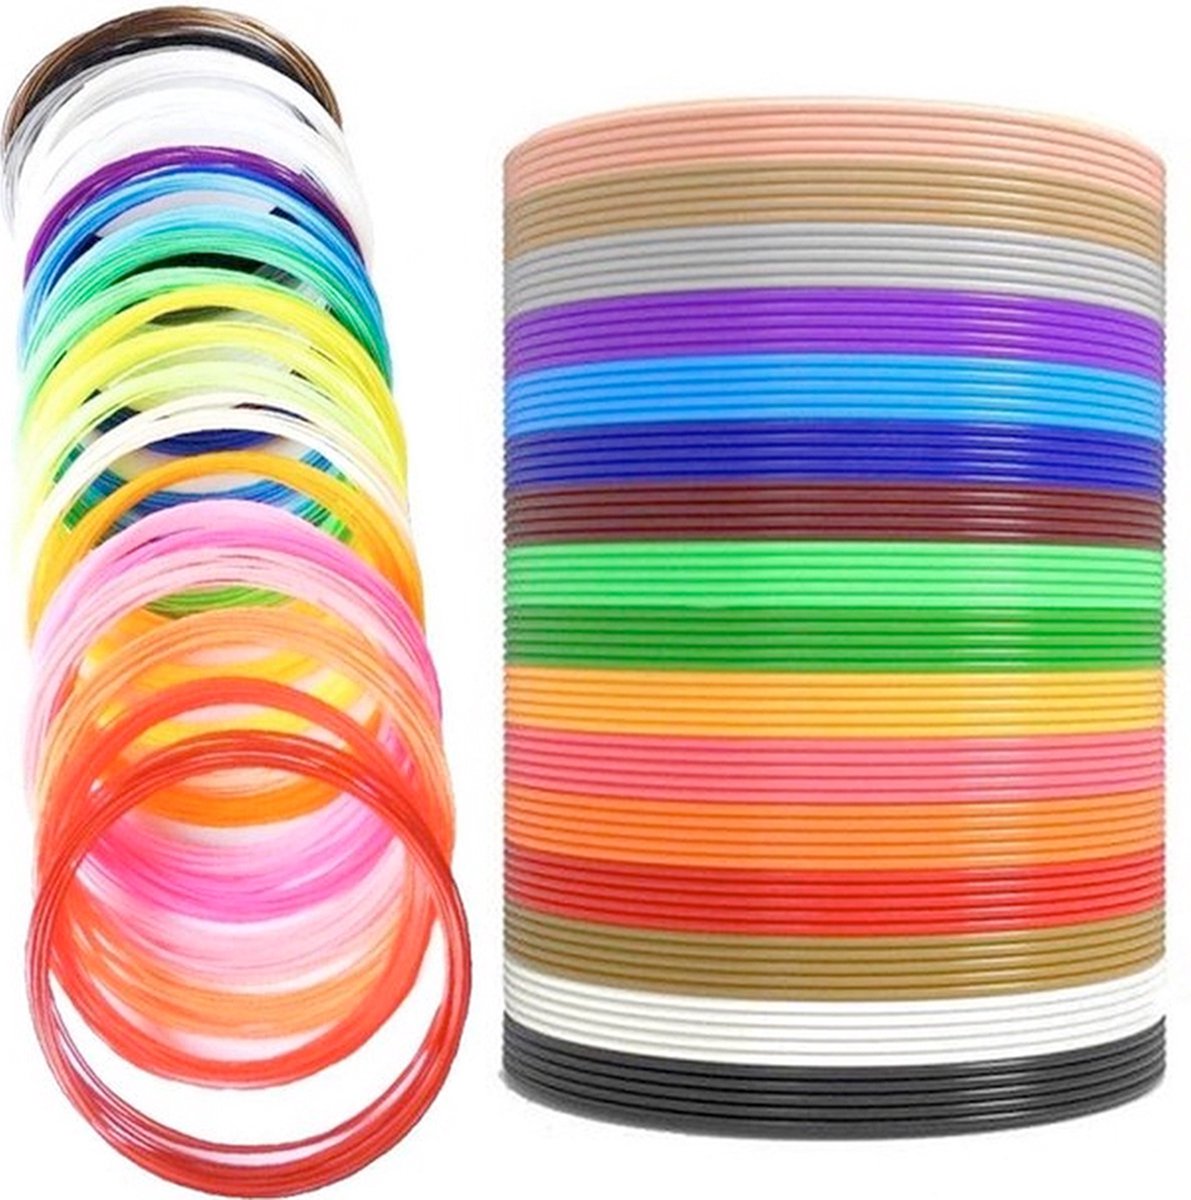 Filament pour stylo 3D 6 couleurs arc-en-ciel (6 x 10 mètres)